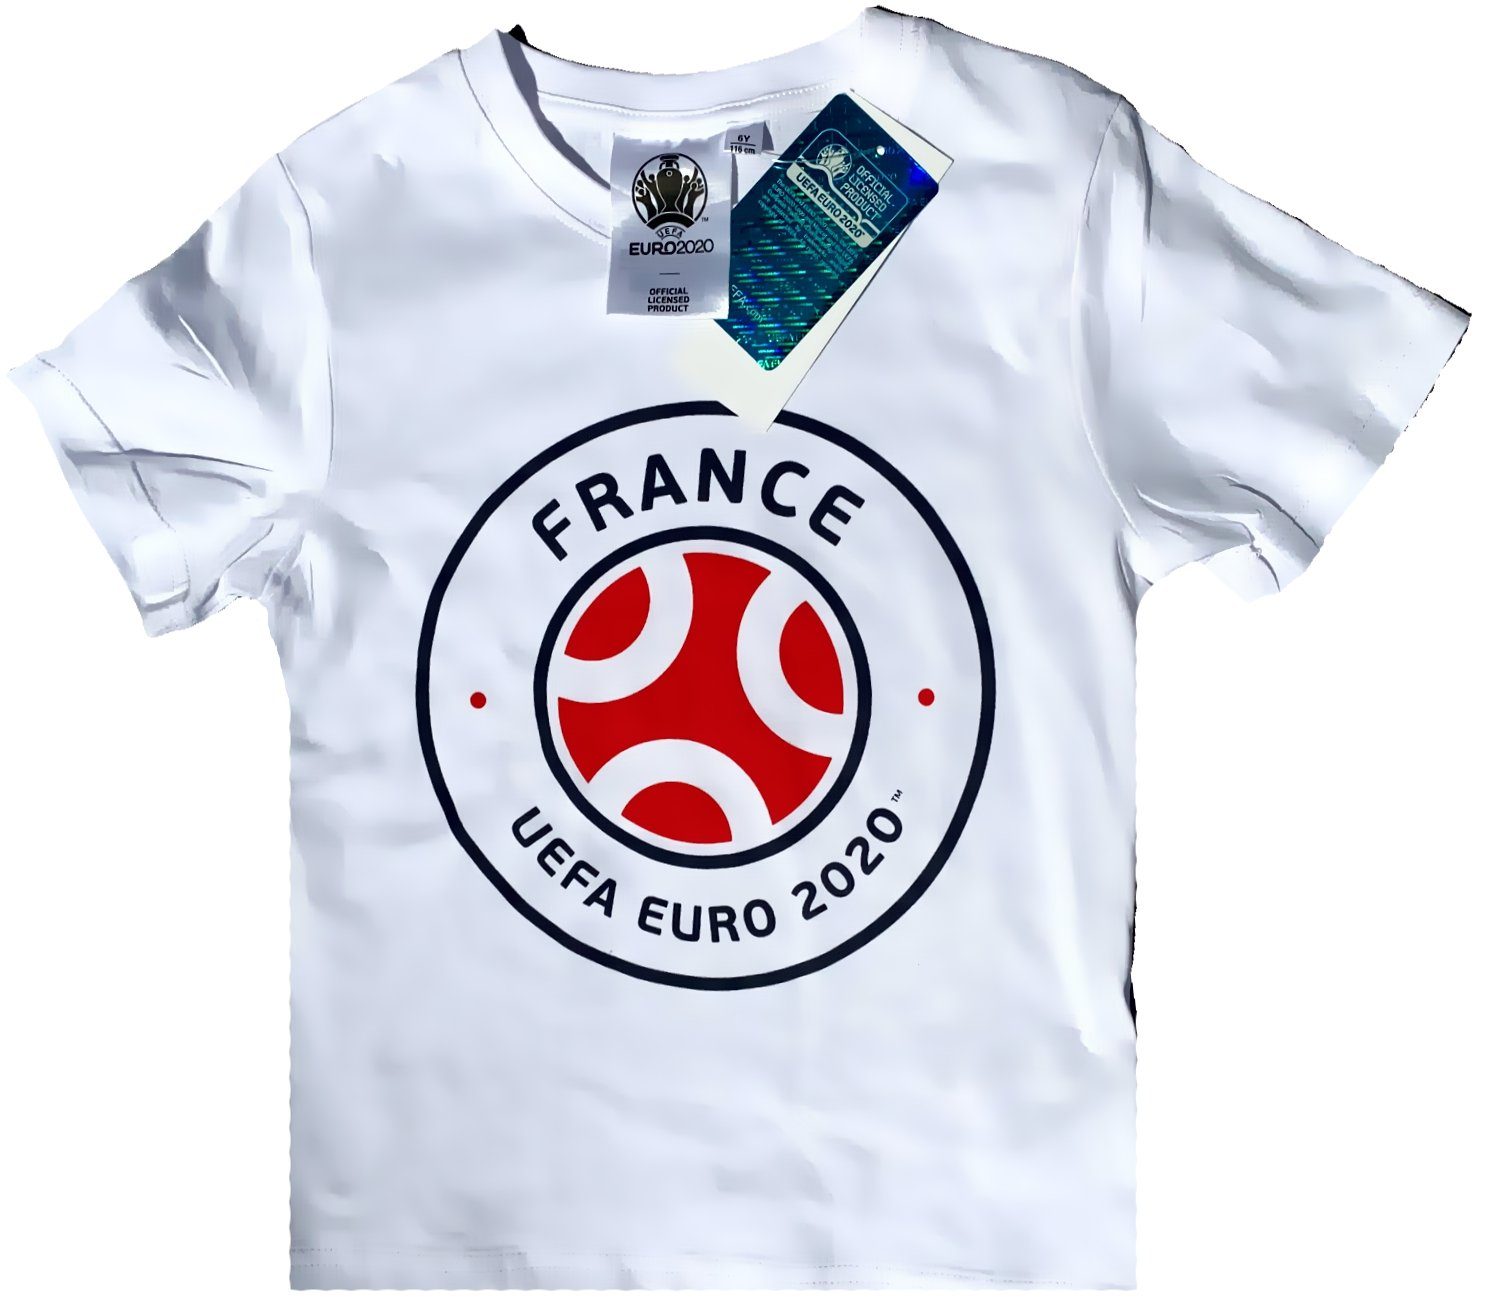 Türkei EM 2020 Fanartikel Fußball Fan Fanshirt Kinder Jungen T-Shirt Trikot 